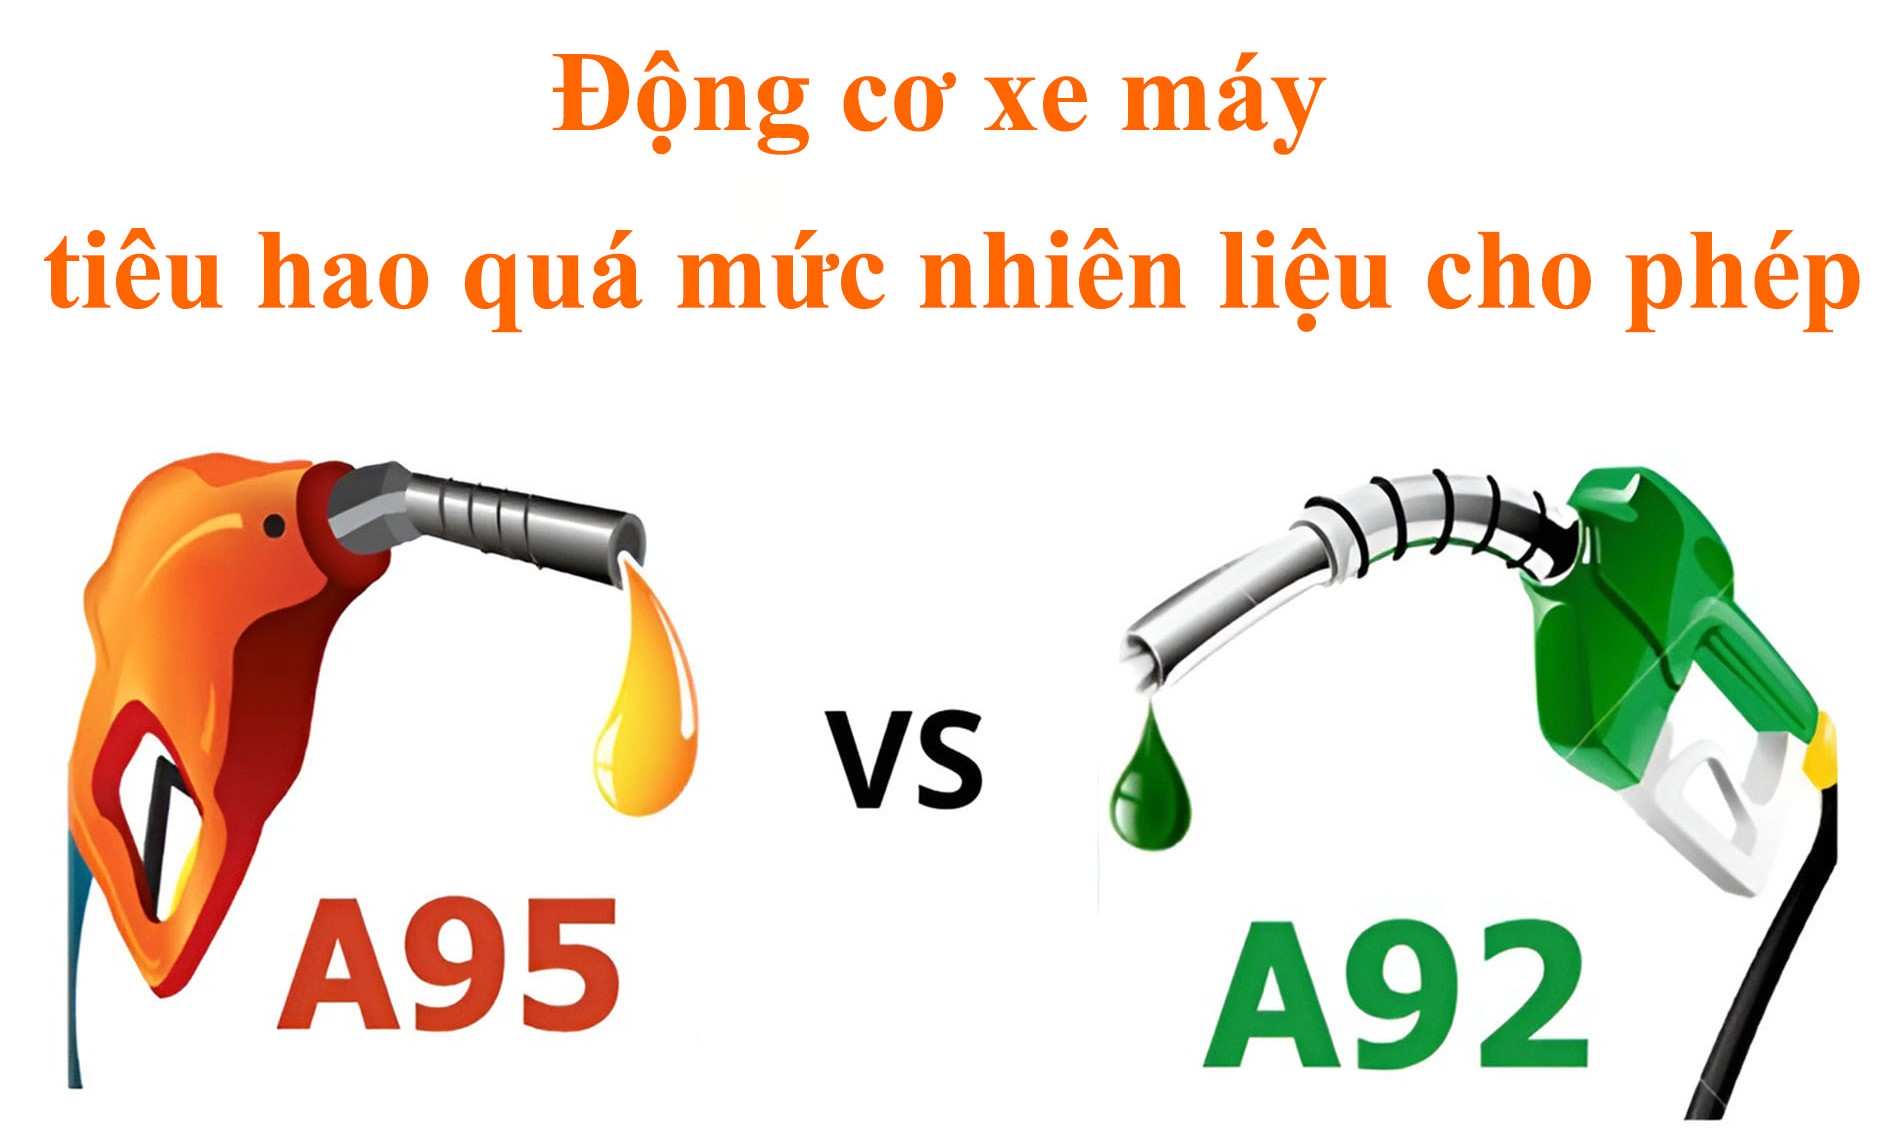 Sử dụng loại xăng có chỉ số octan không phù hợp cũng khiến động cơ xe tiêu hao nhiên liệu quá mức cho phép